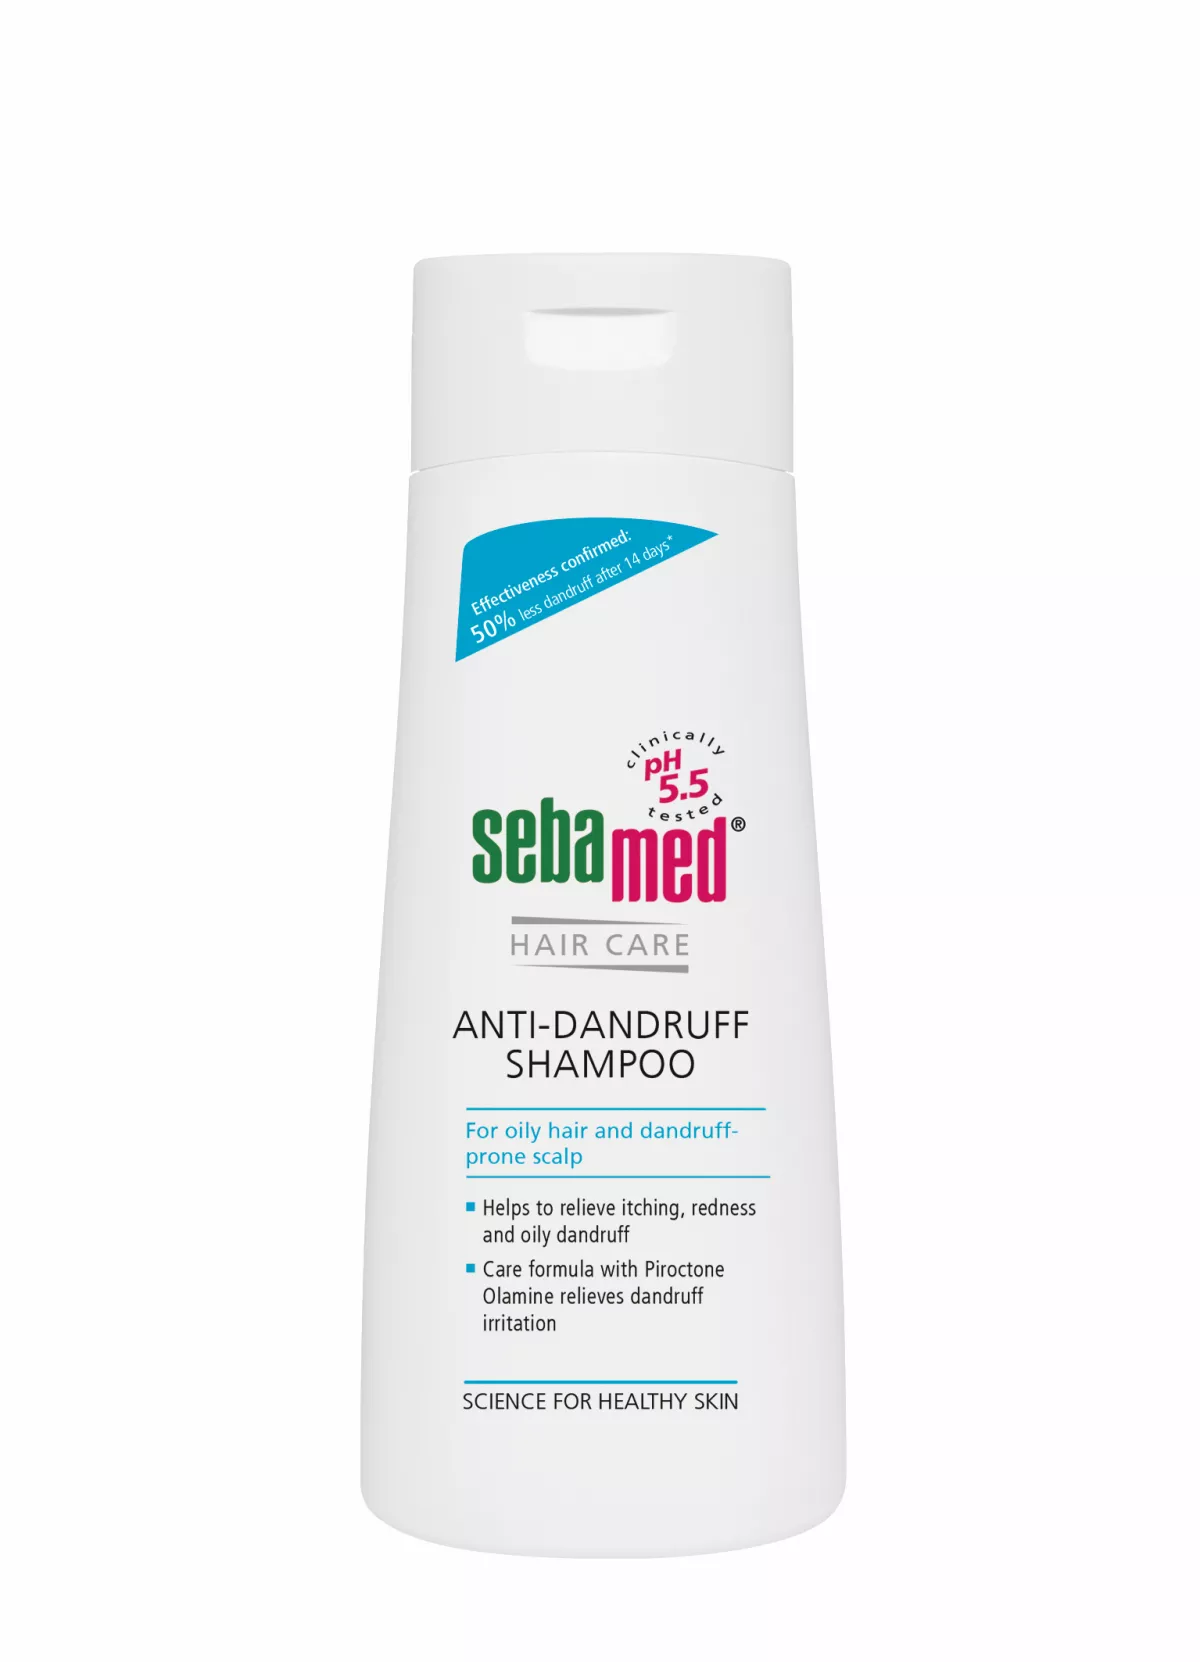 Sebamed Haircare Șampon dermatologic antimătreață * 200 ml, [],clinicafarm.ro